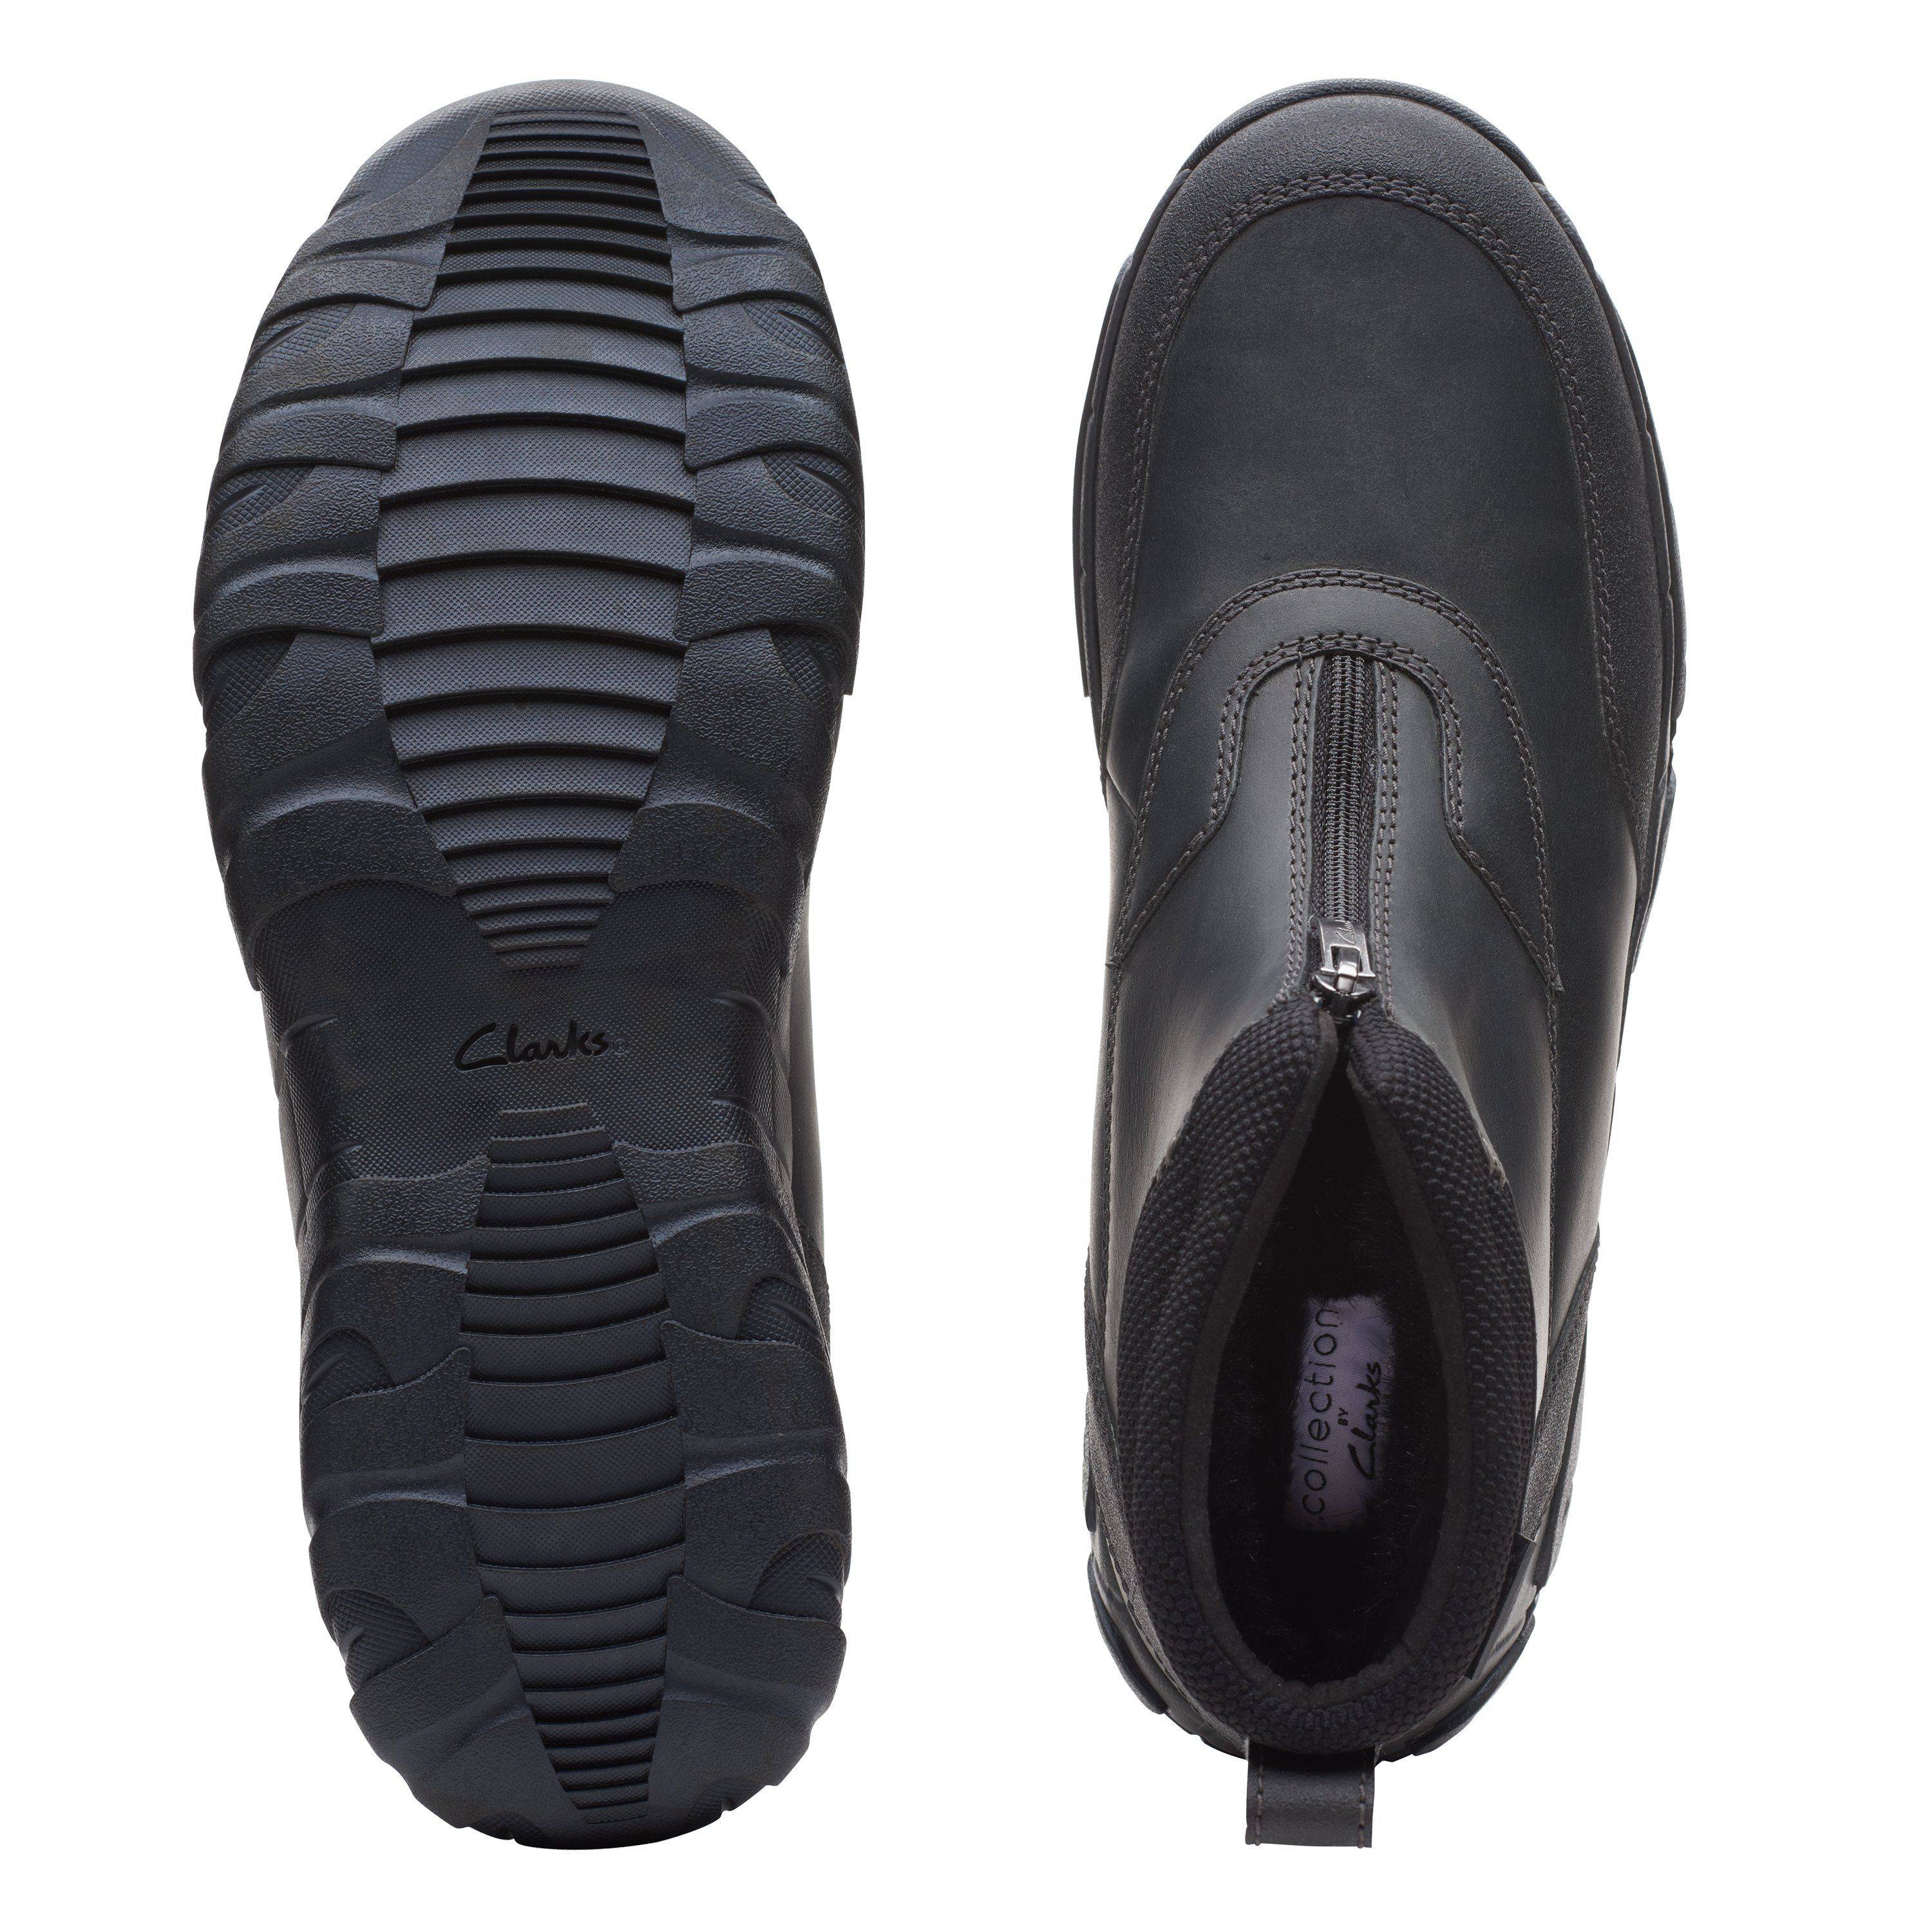 Мужские ботинки на молнии Clarks (Grove Zip II 26163588), черные, цвет черный, размер 40 - фото 7